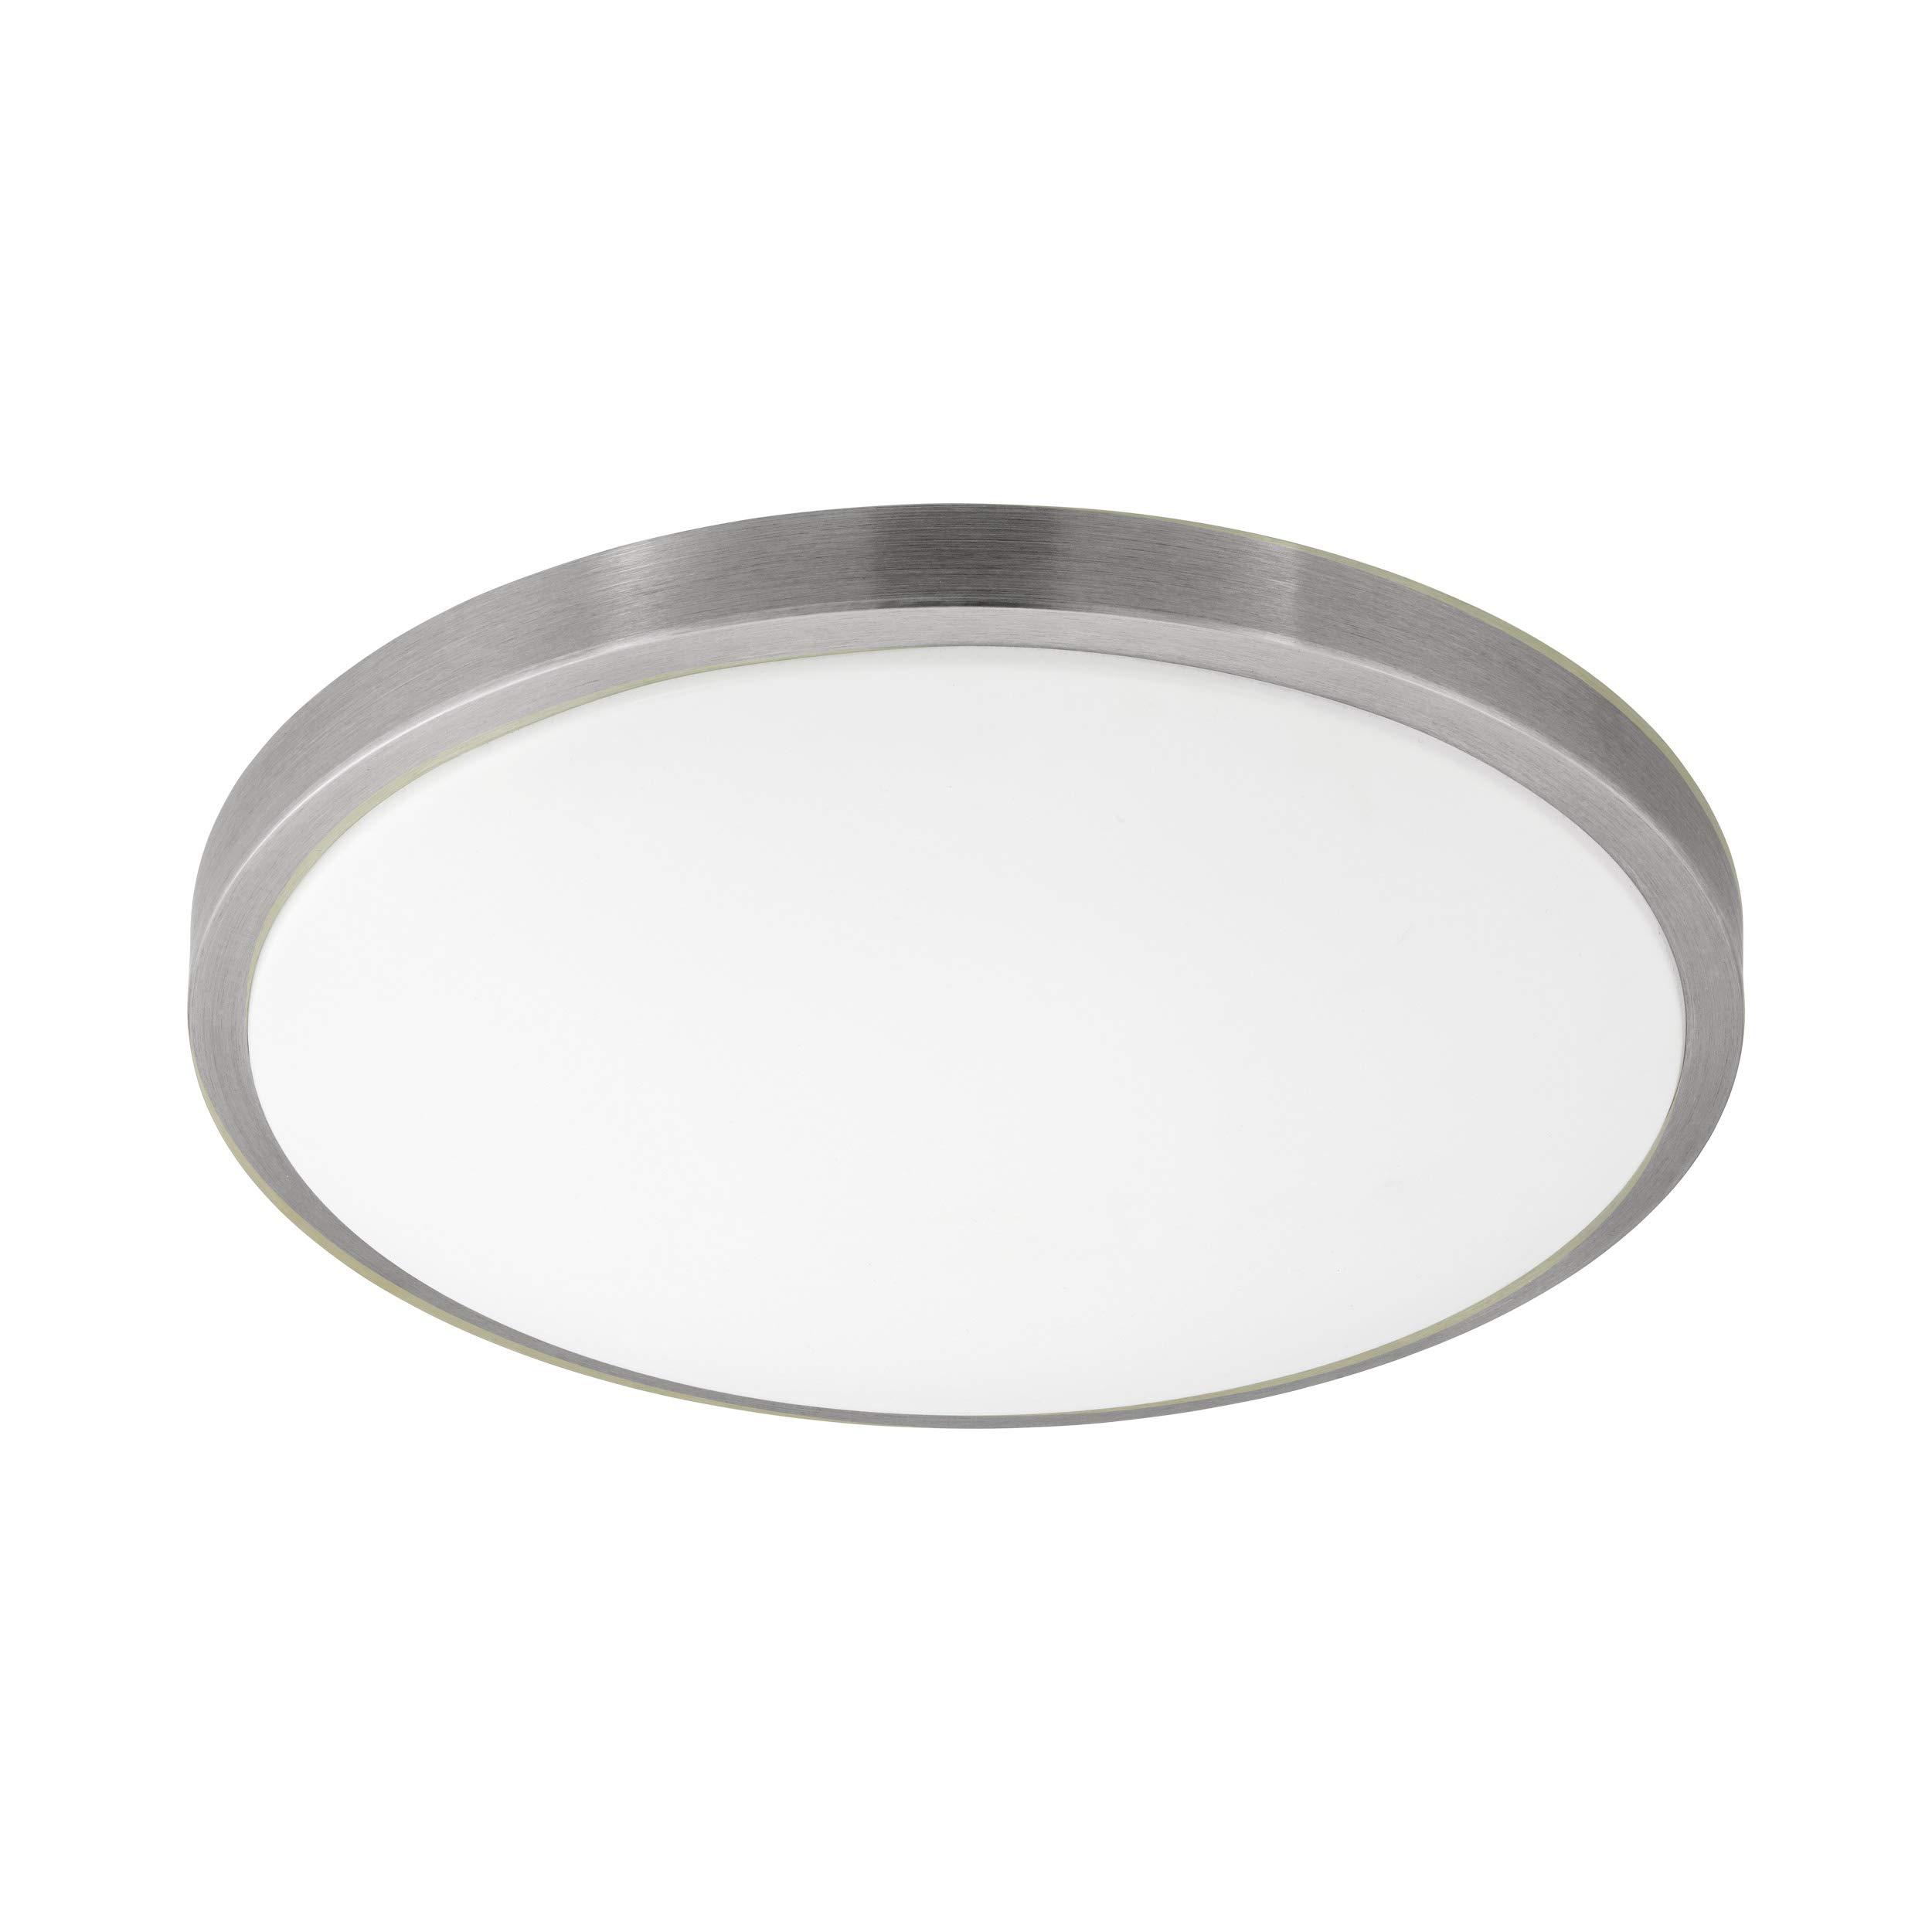 EGLO LED Deckenlampe Competa 1, 1 flammige Deckenleuchte, Material: Stahl und Kunststoff, Farbe: Silber, weiß, L: 34 cm